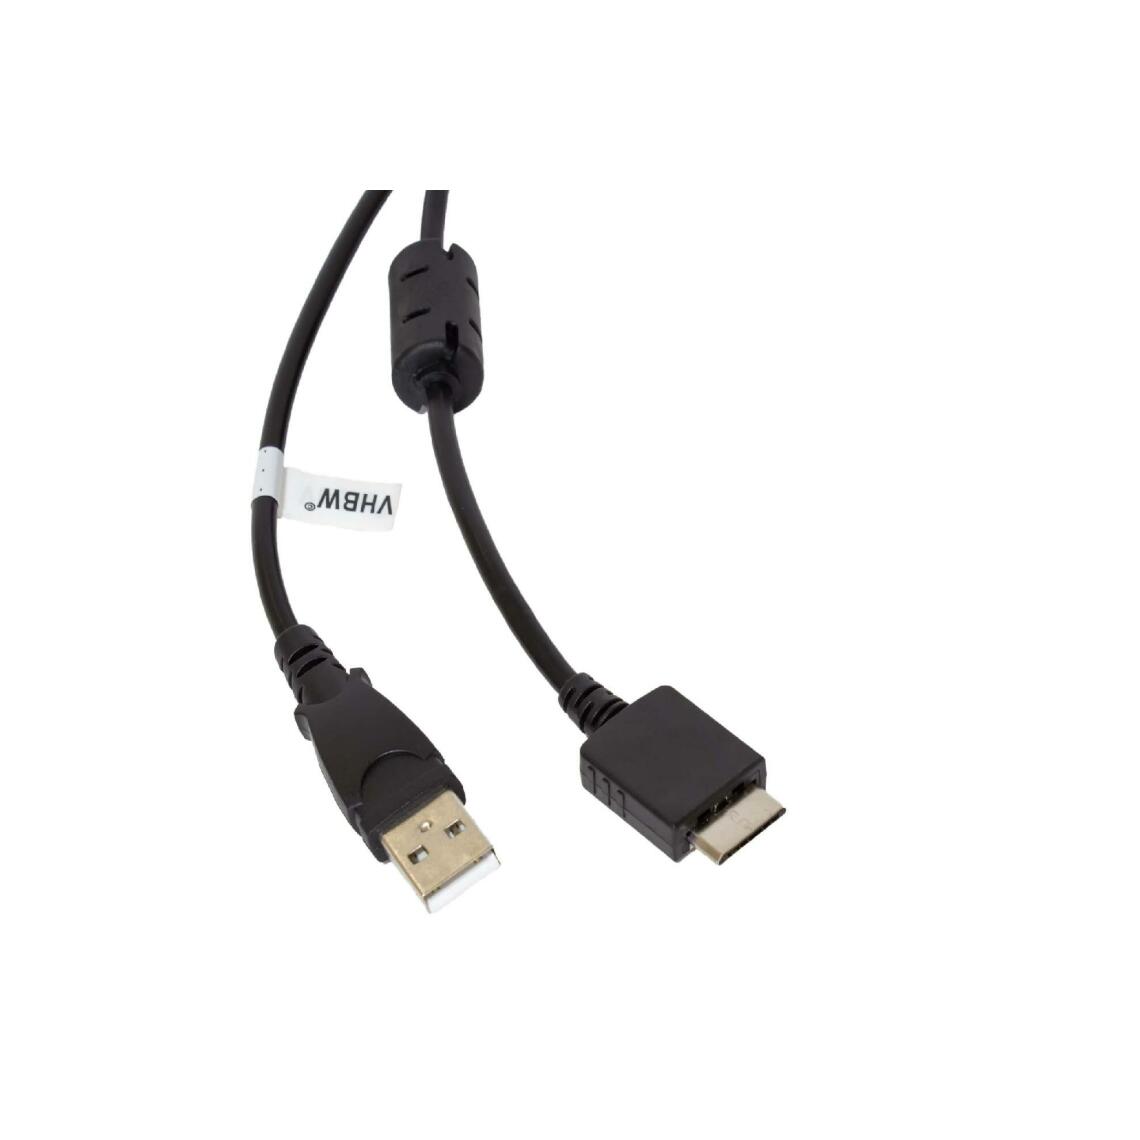 Vhbw - vhbw câble de données USB (type A sur lecteur MP3) câble de chargement compatible avec Sony Walkman NWZ-S616FRED lecteur MP3 - noir, 150cm - Alimentation modulaire